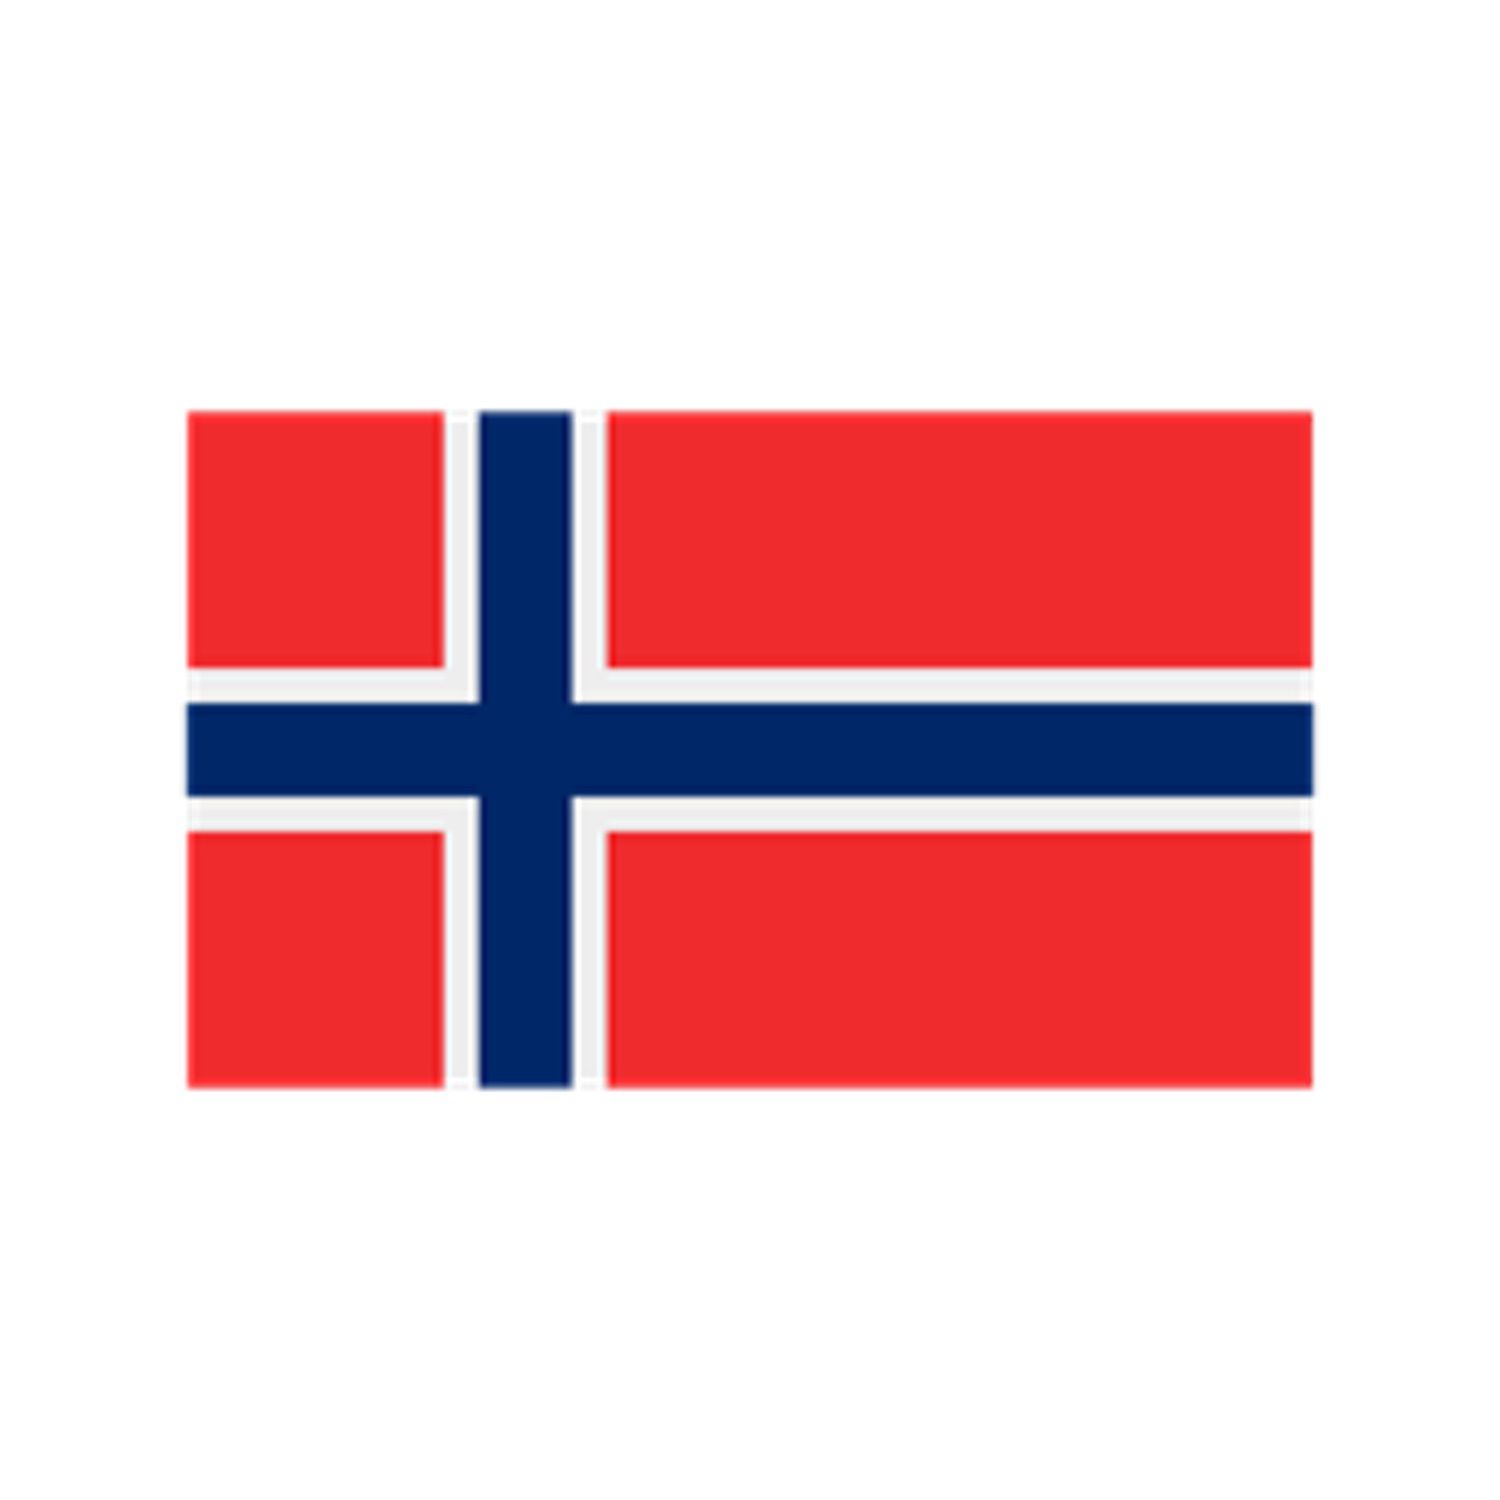 7340-Norway-1